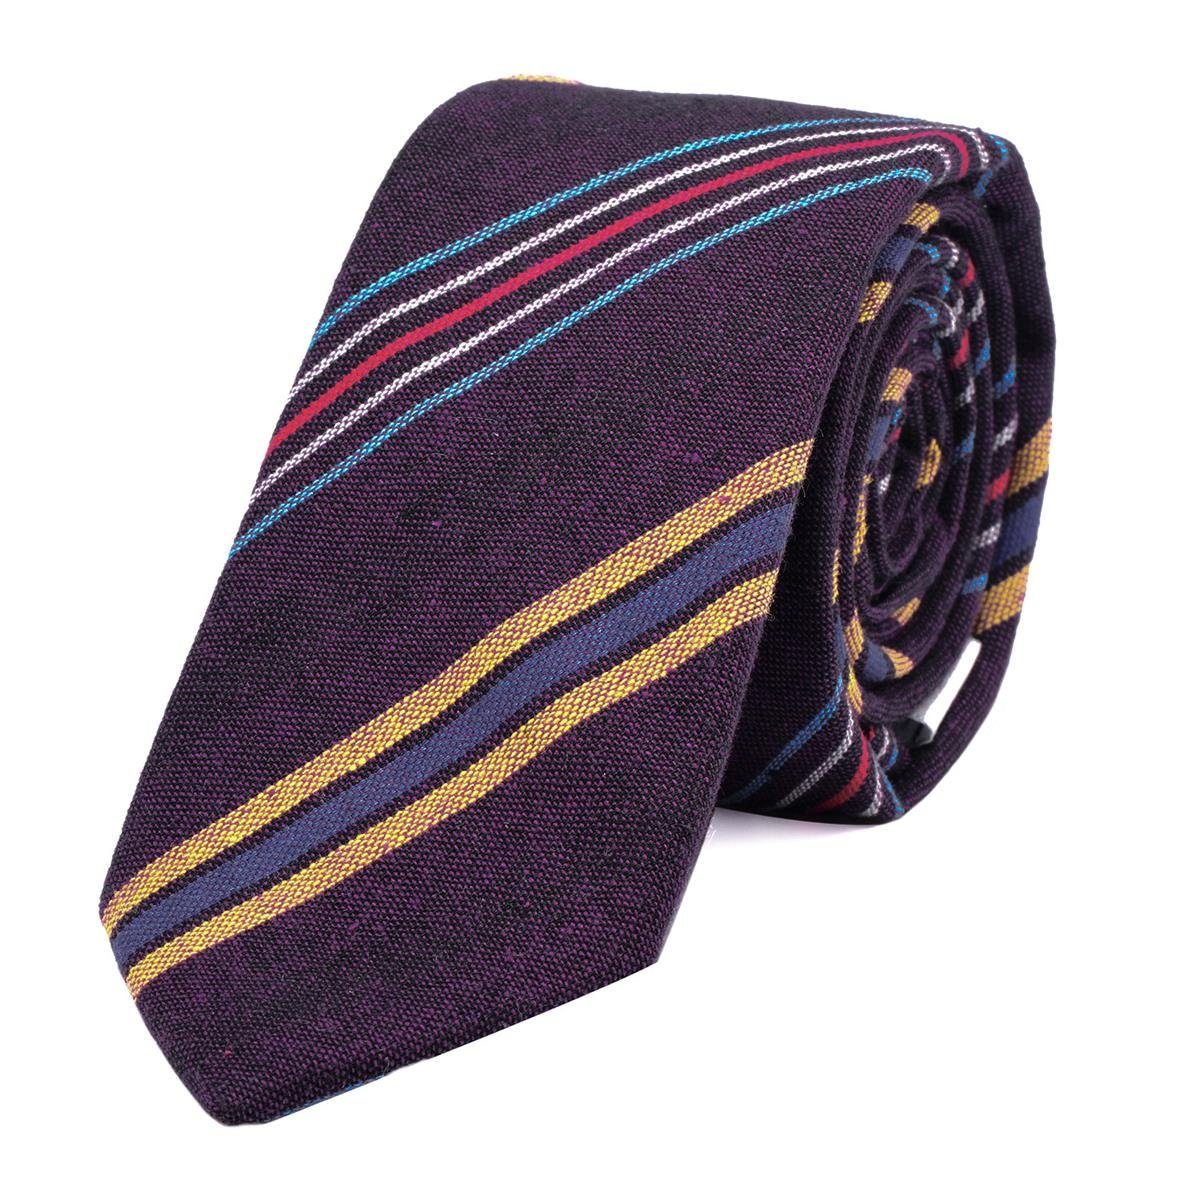 DonDon Krawatte Herren Krawatte 6 cm mit Karos oder Streifen (Packung, 1-St., 1x Krawatte) Baumwolle, kariert oder gestreift, für Büro oder festliche Veranstaltungen lila gestreift